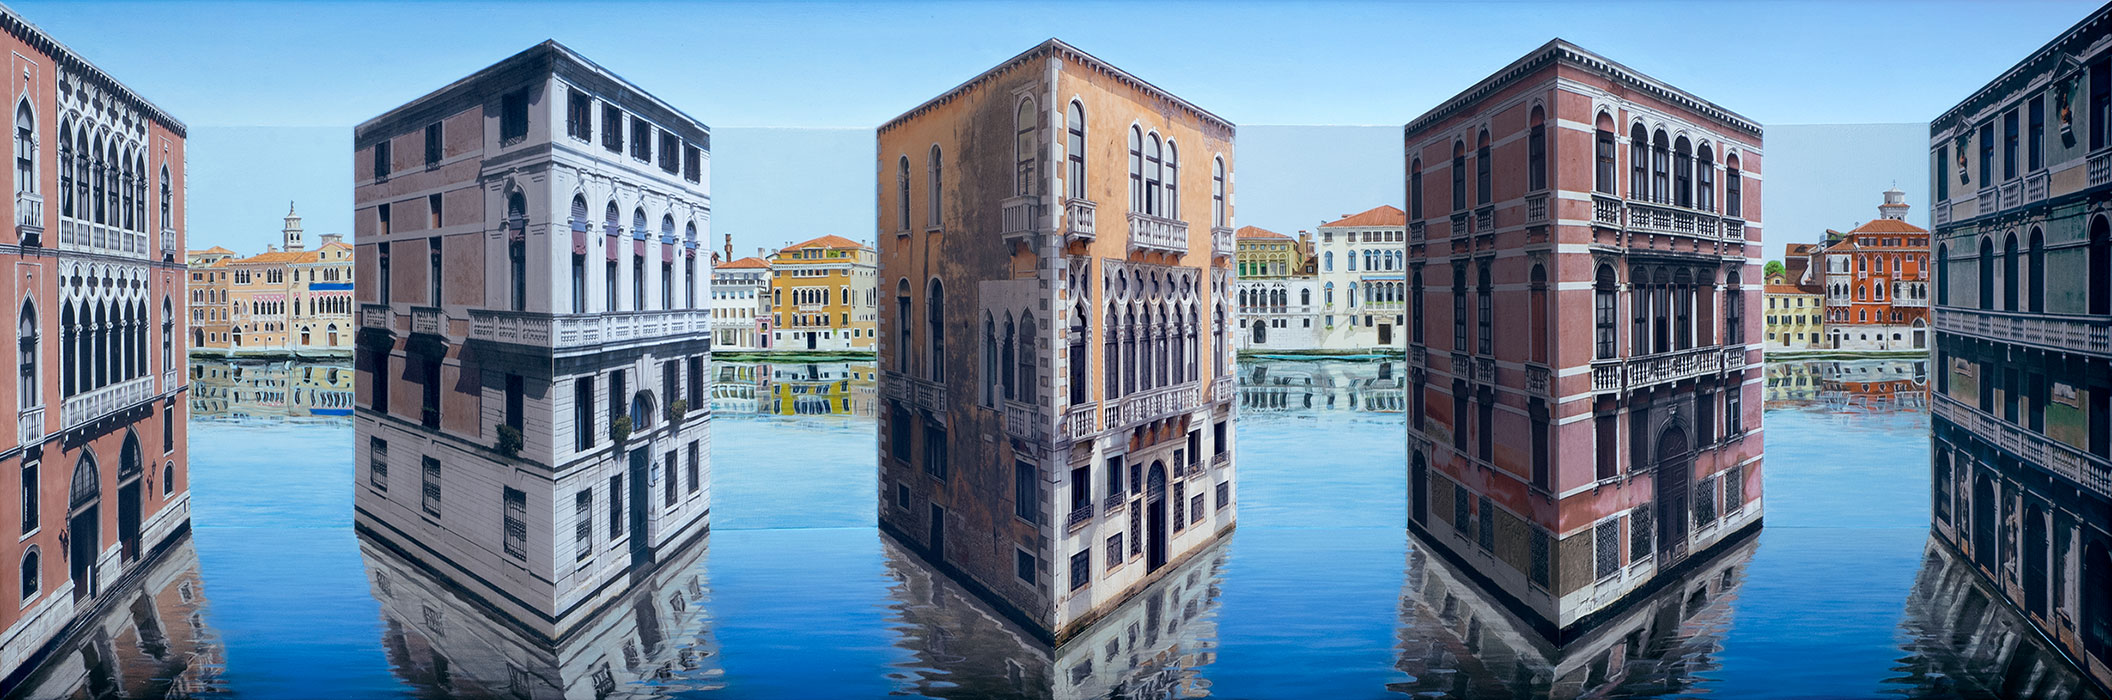 Pretend Palazzo <p>2020 | Edition 5 | 60 x 166.5 x 18 cm / 23 ⅝ x 65 ½ x 7 ⅛ in</p>
